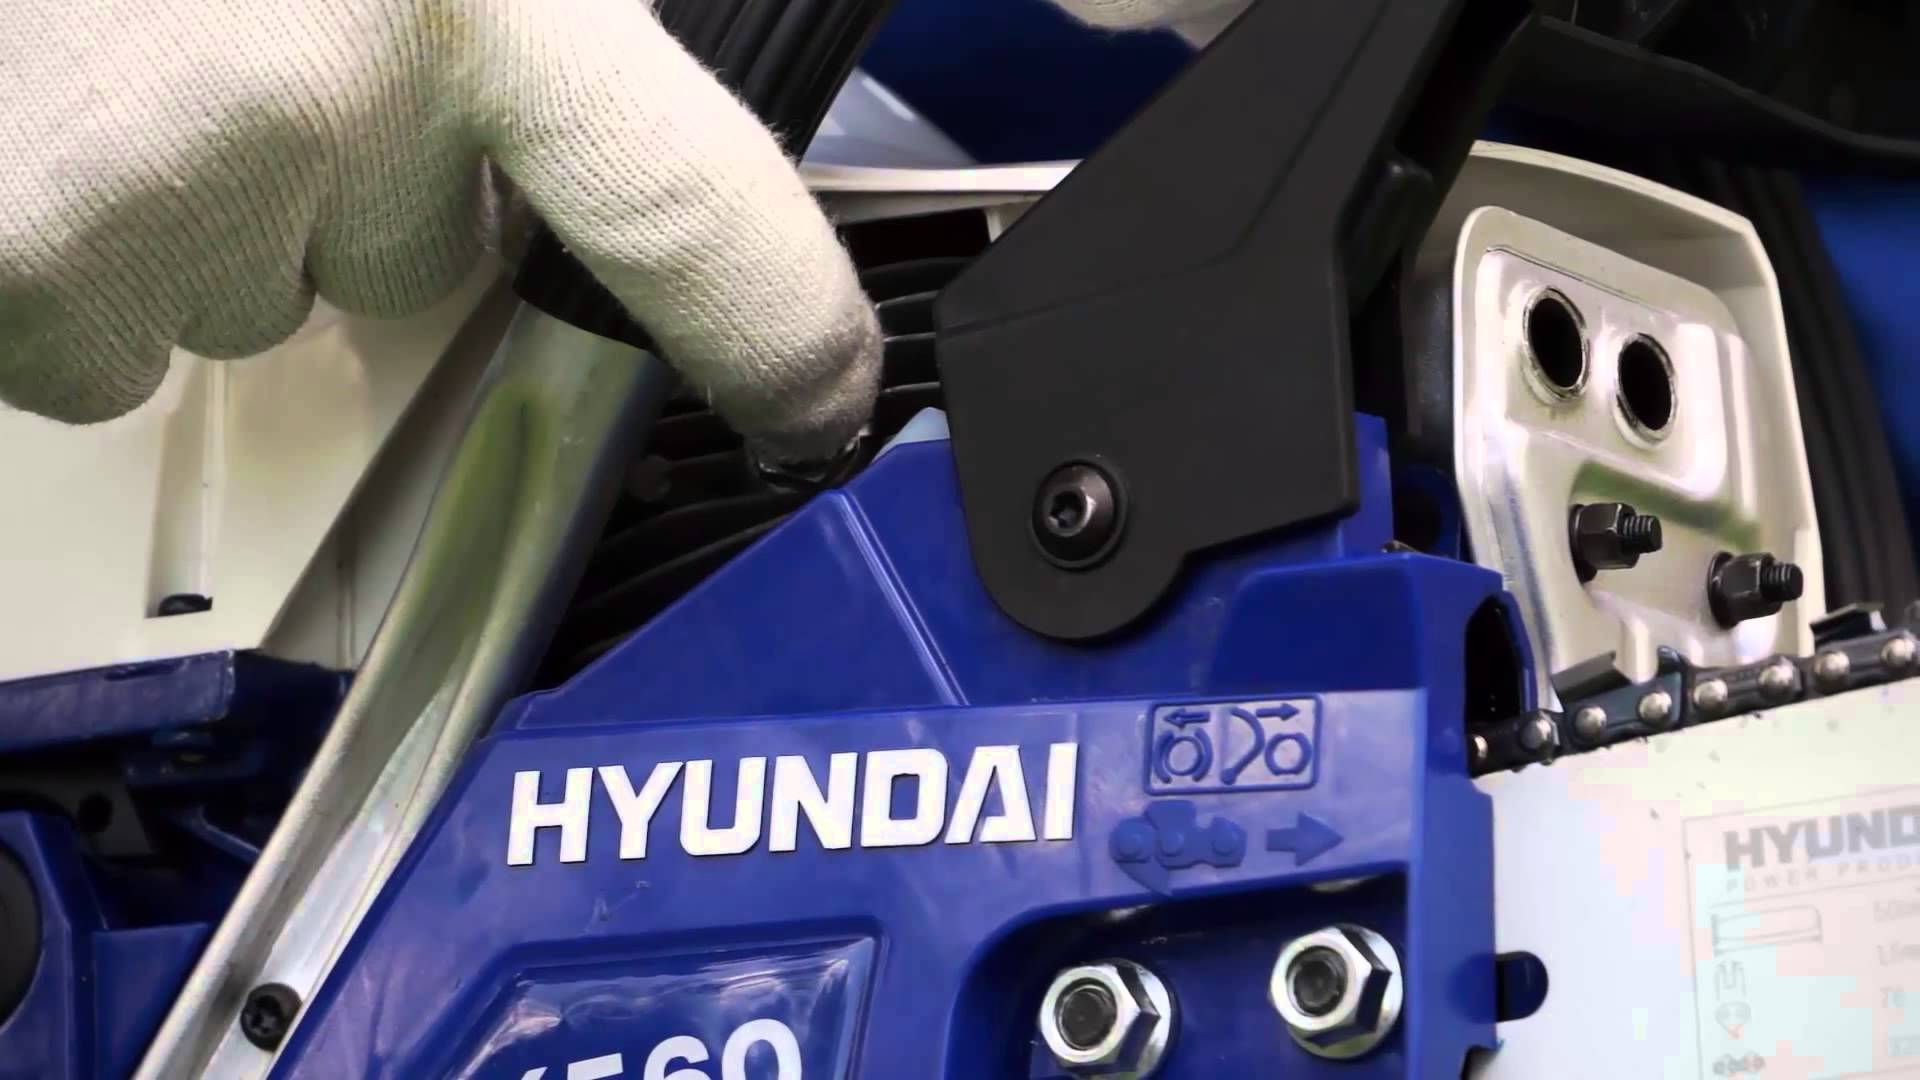 Kettensägen Hyundai - eine Übersicht und Merkmale der Aufstellung